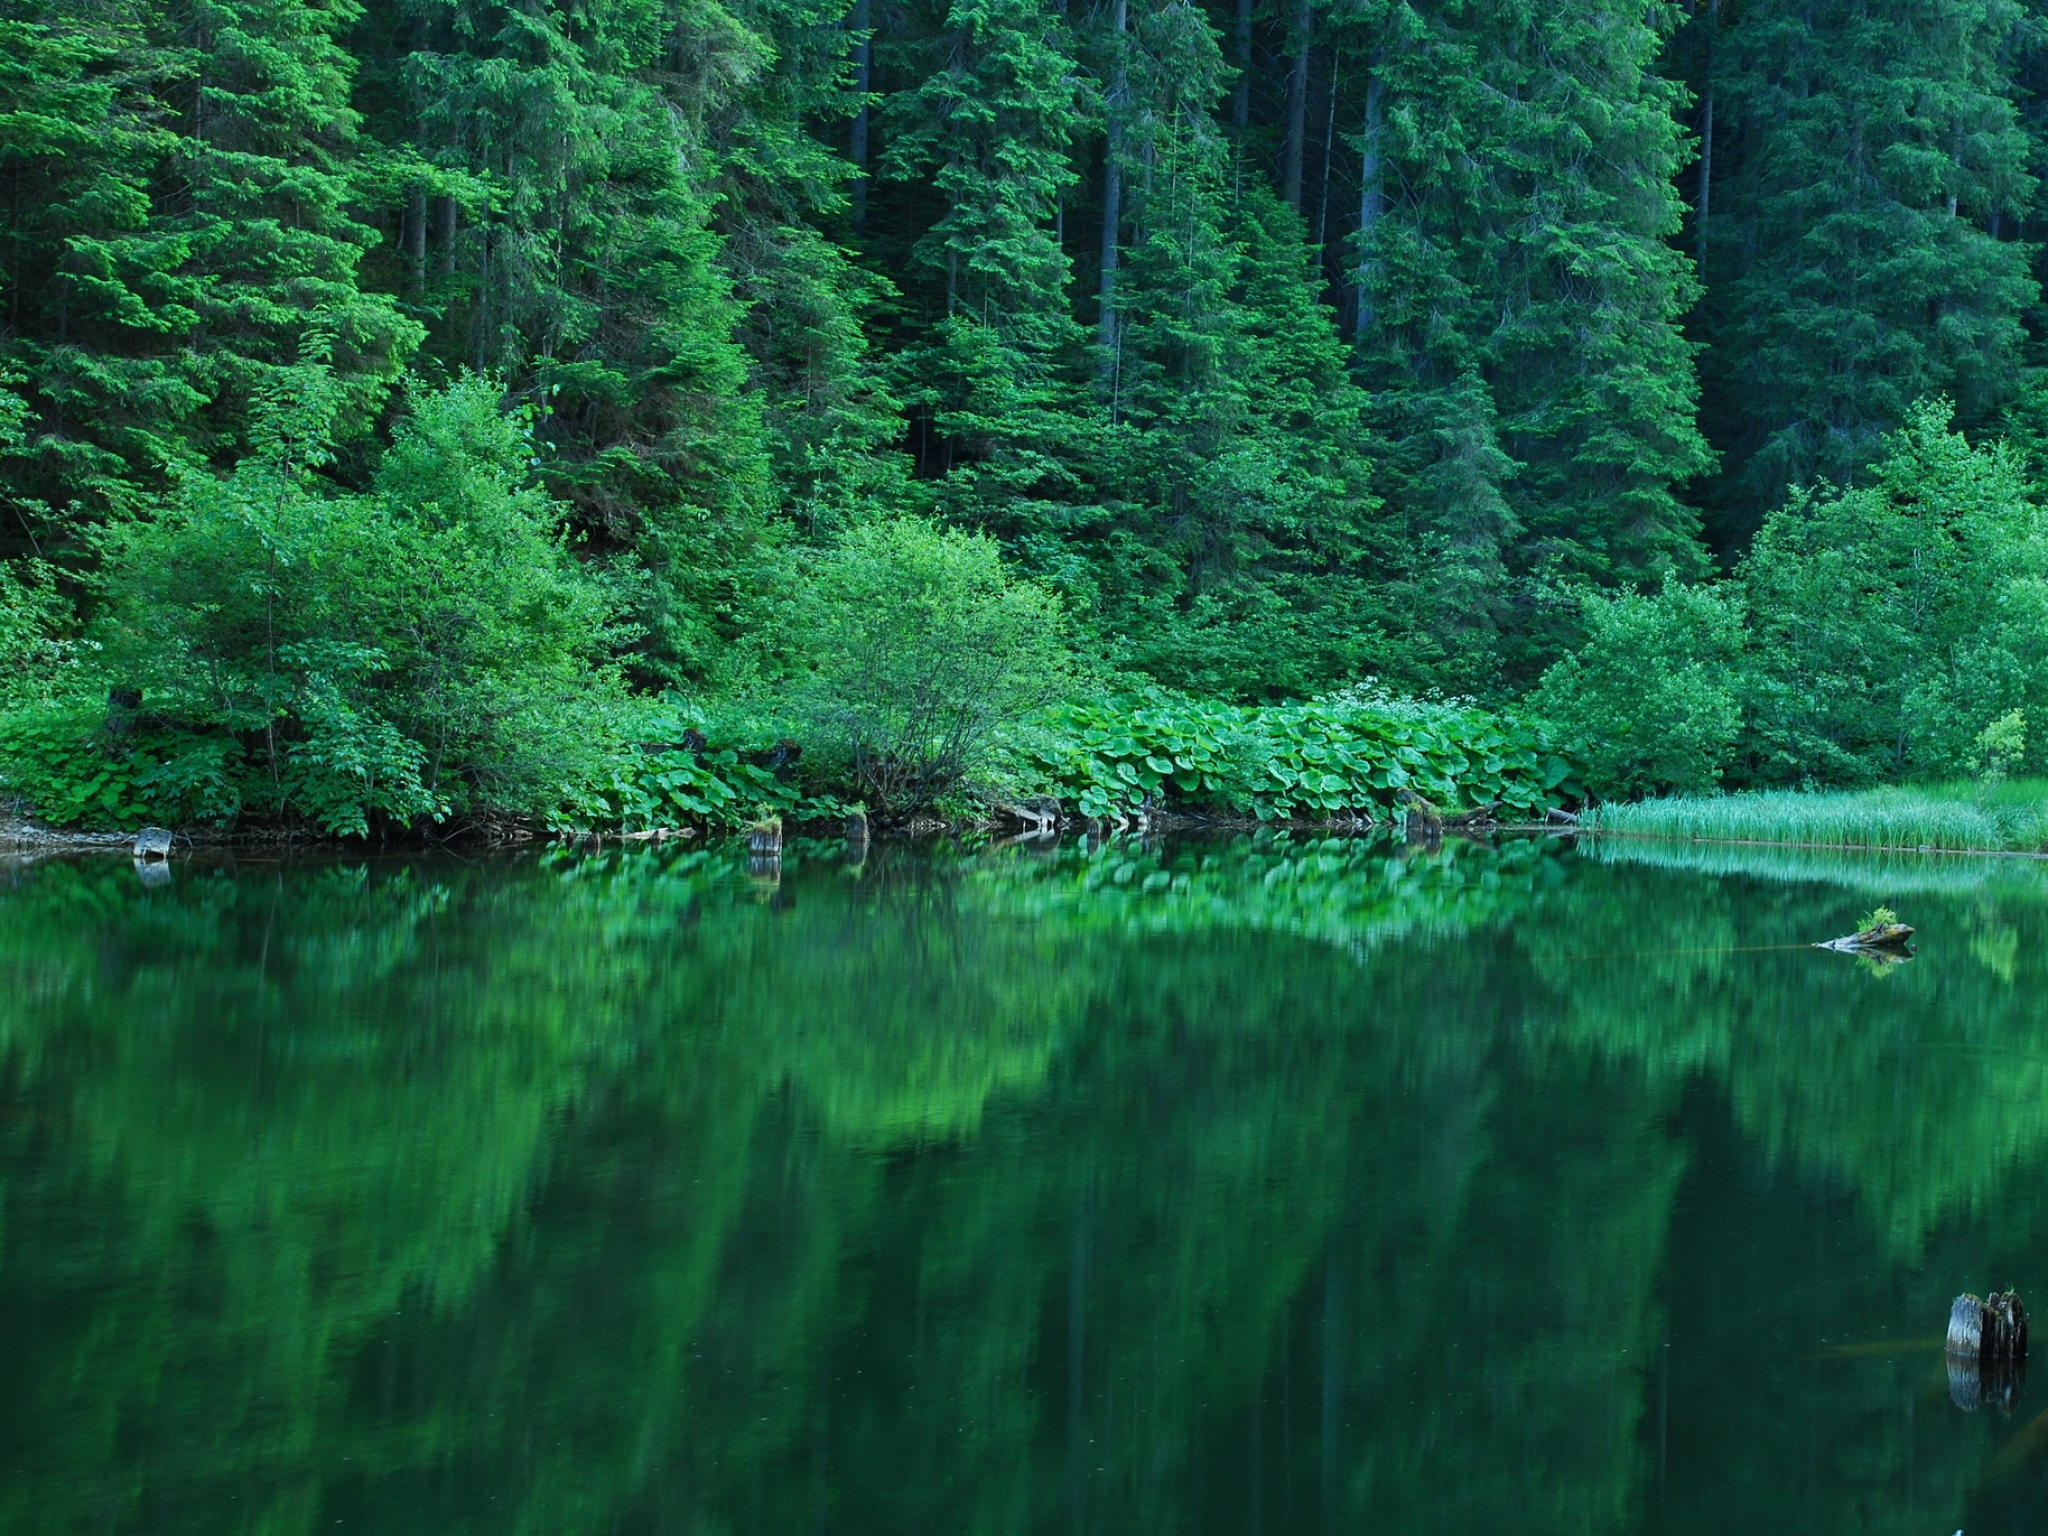 Вся природа и лес и вода. Изумрудное озеро зеленолес. Озеро Рица. Лесное озеро Залмана Кинга. Изумрудно-зеленые водоемы, Твизель, новая Зеландия.